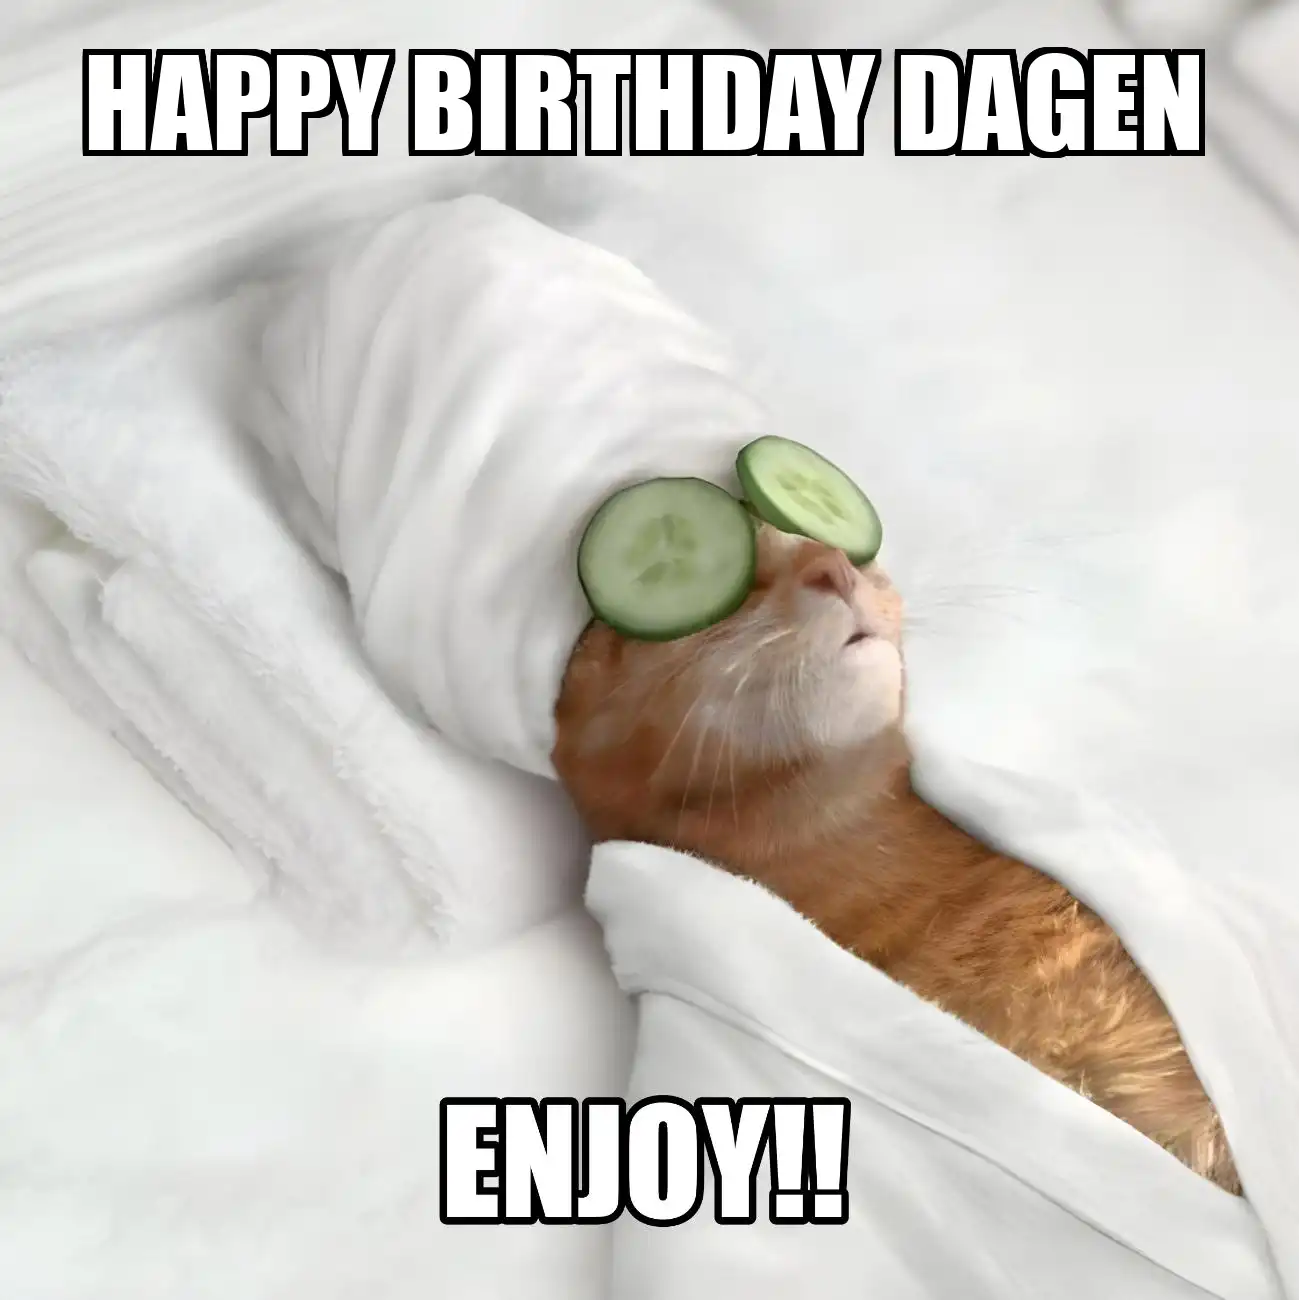 Happy Birthday Dagen Enjoy Cat Meme